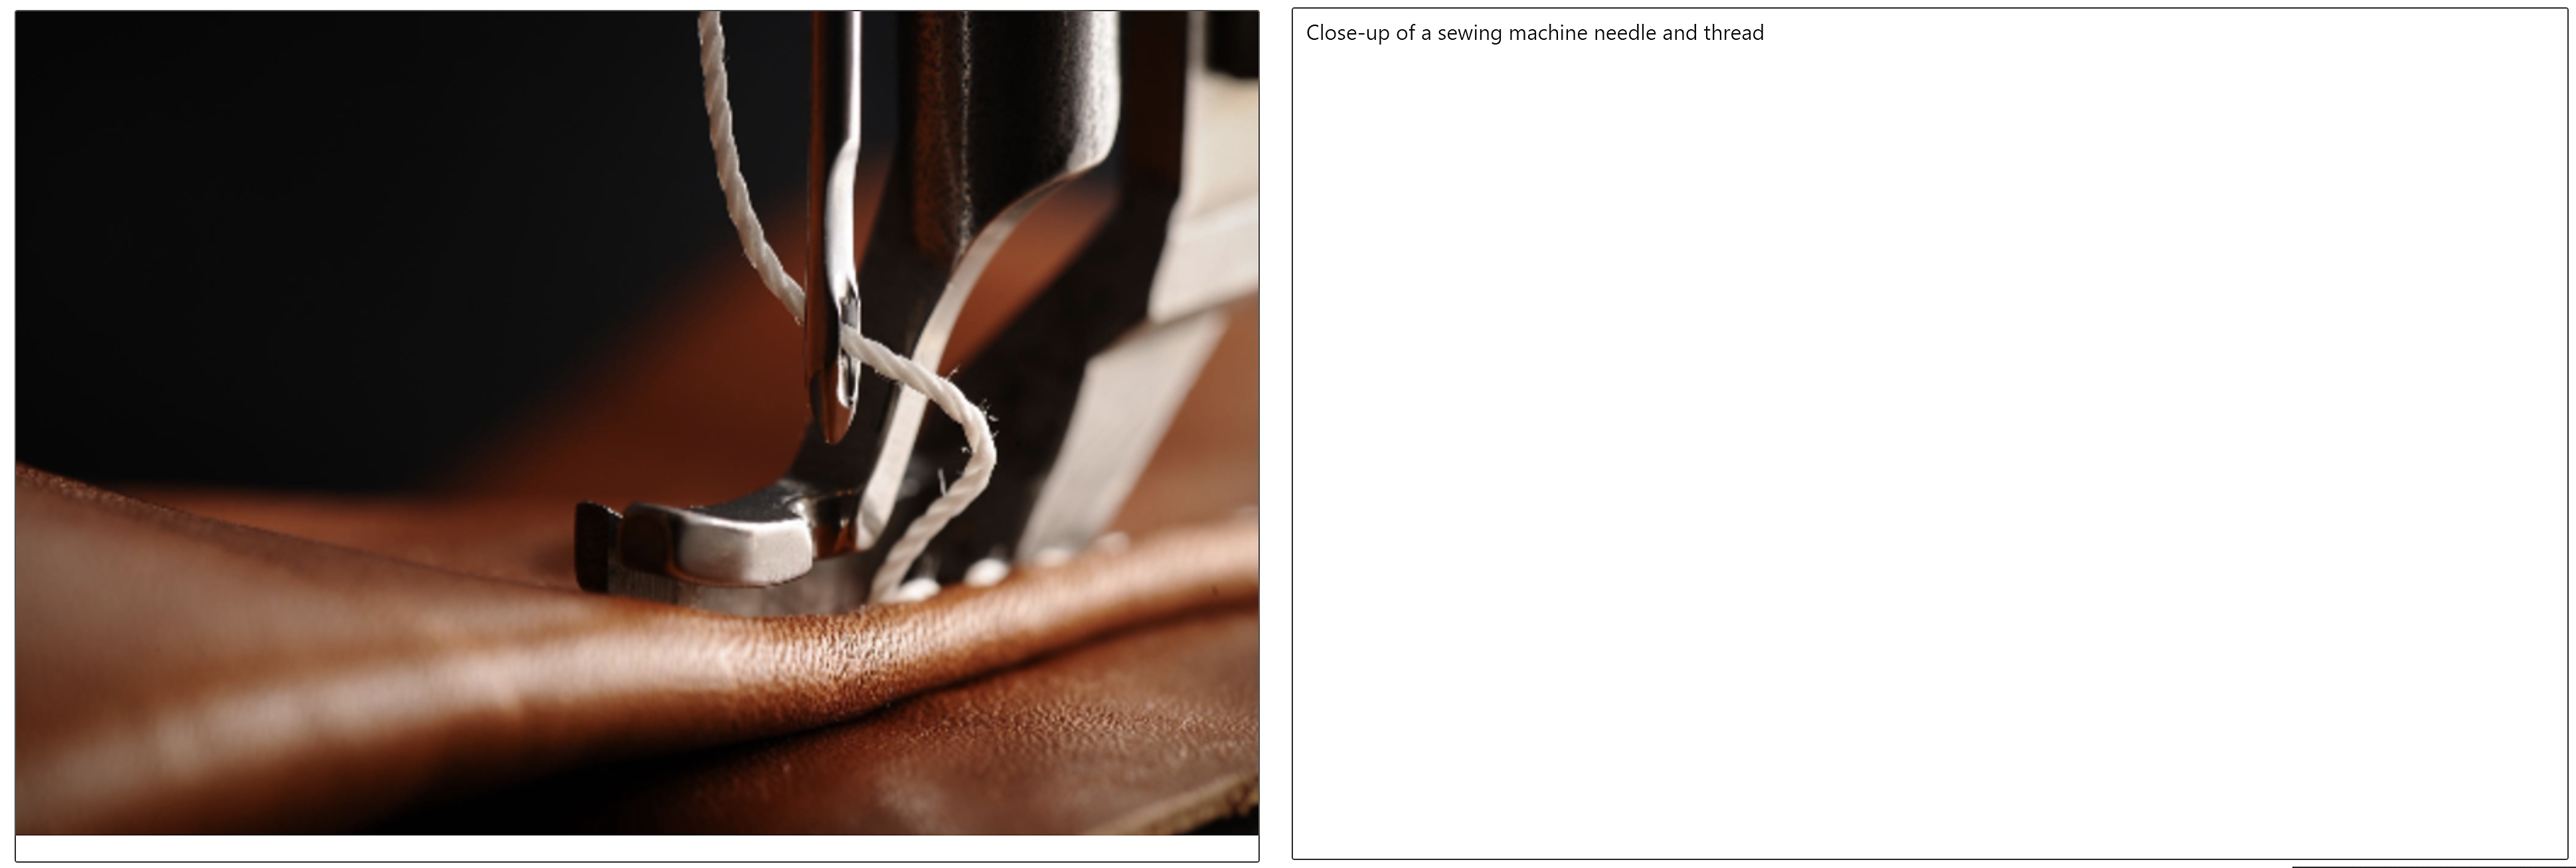 裁縫機針頭和線穿入皮革的特寫，以及該影像的標題在旁邊顯示 